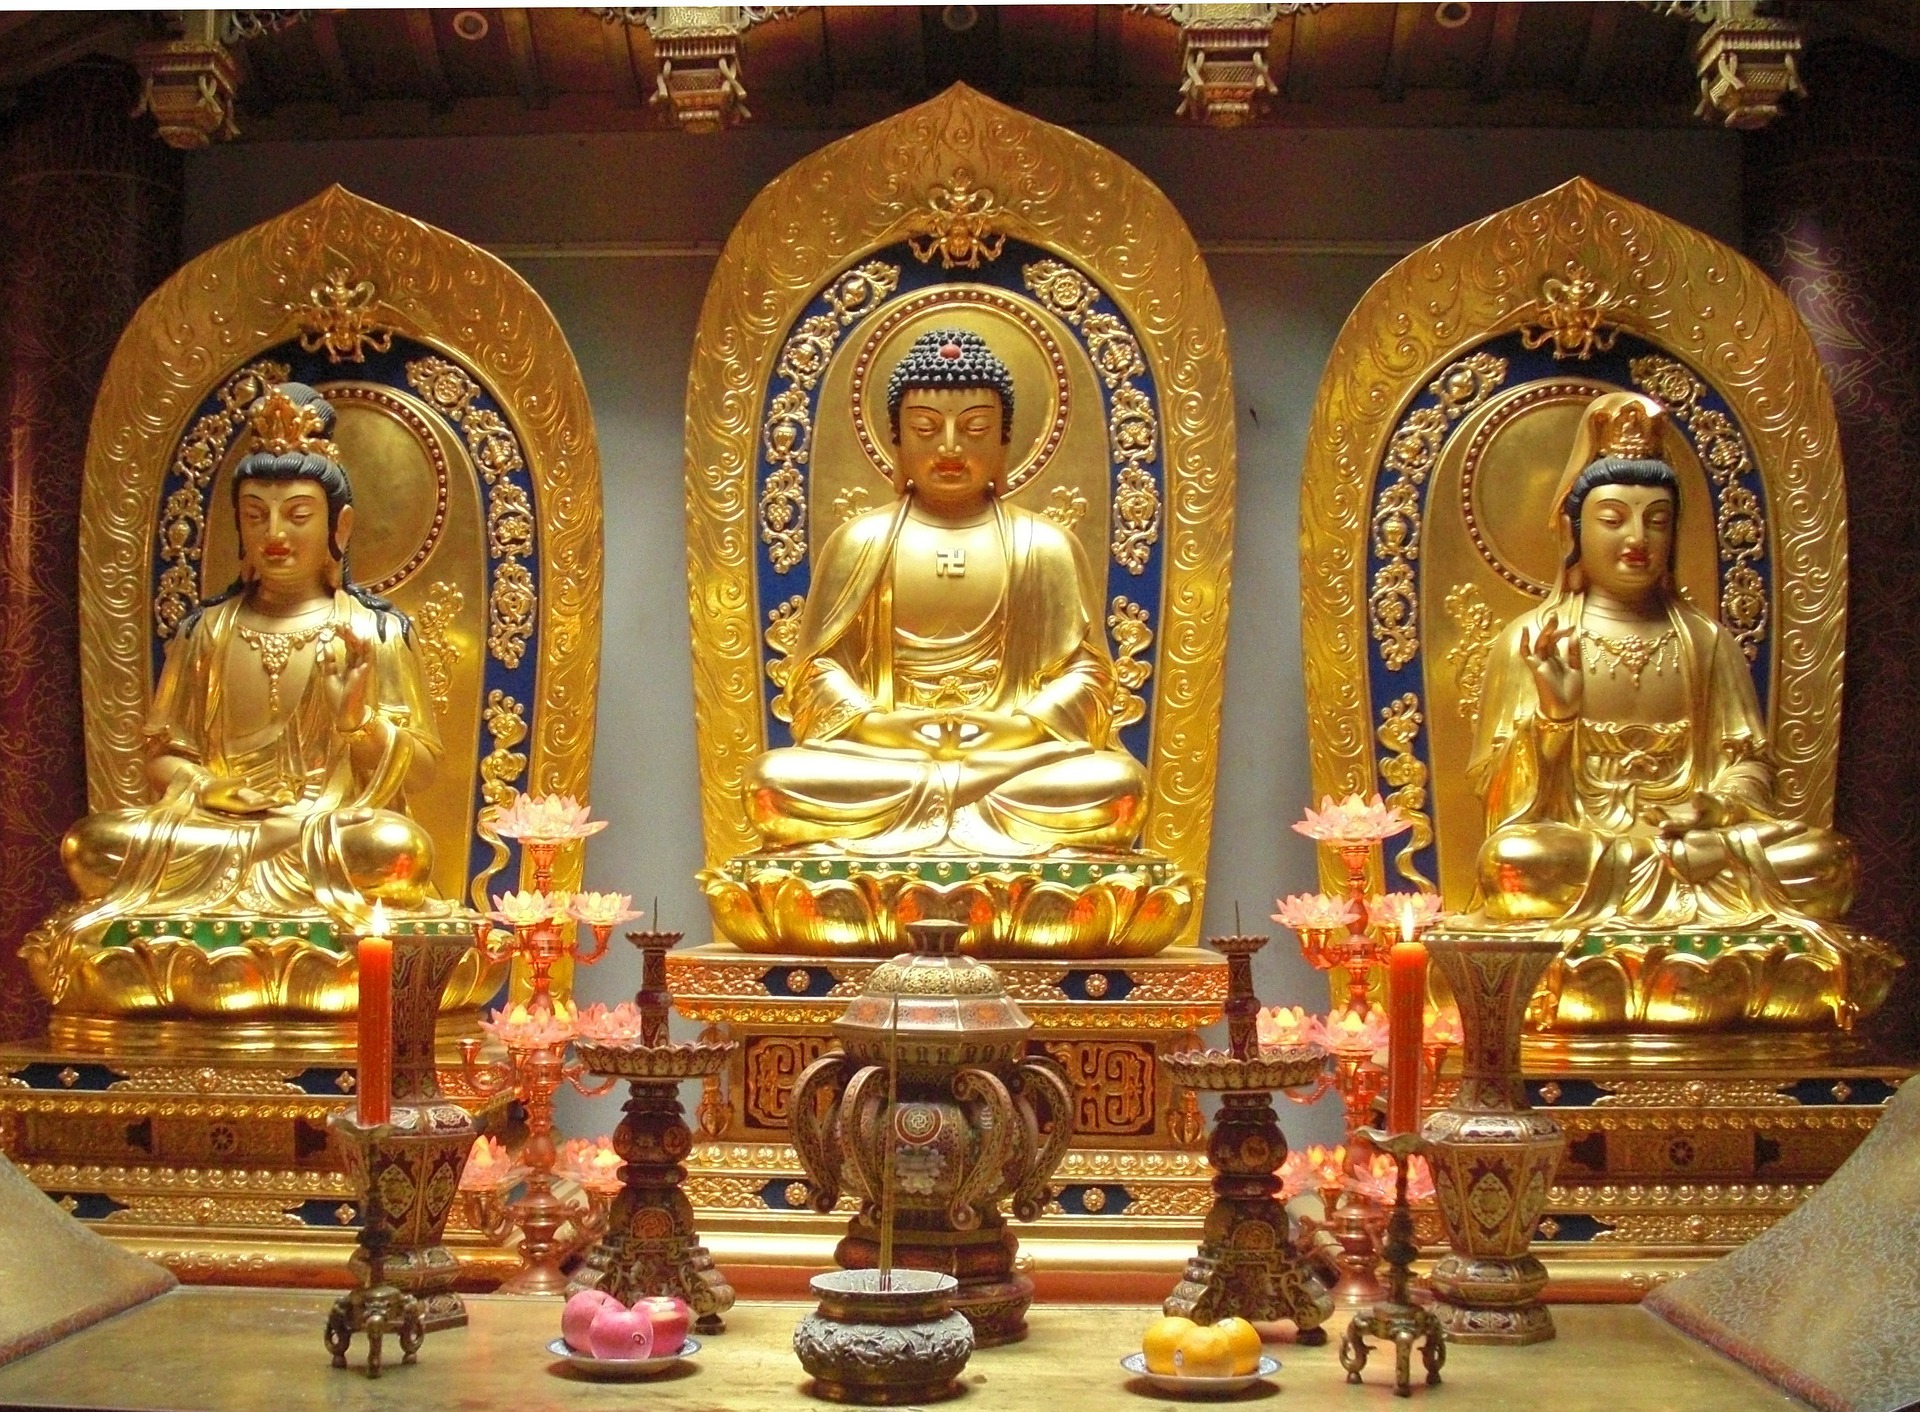  Phật Giáo căn bản